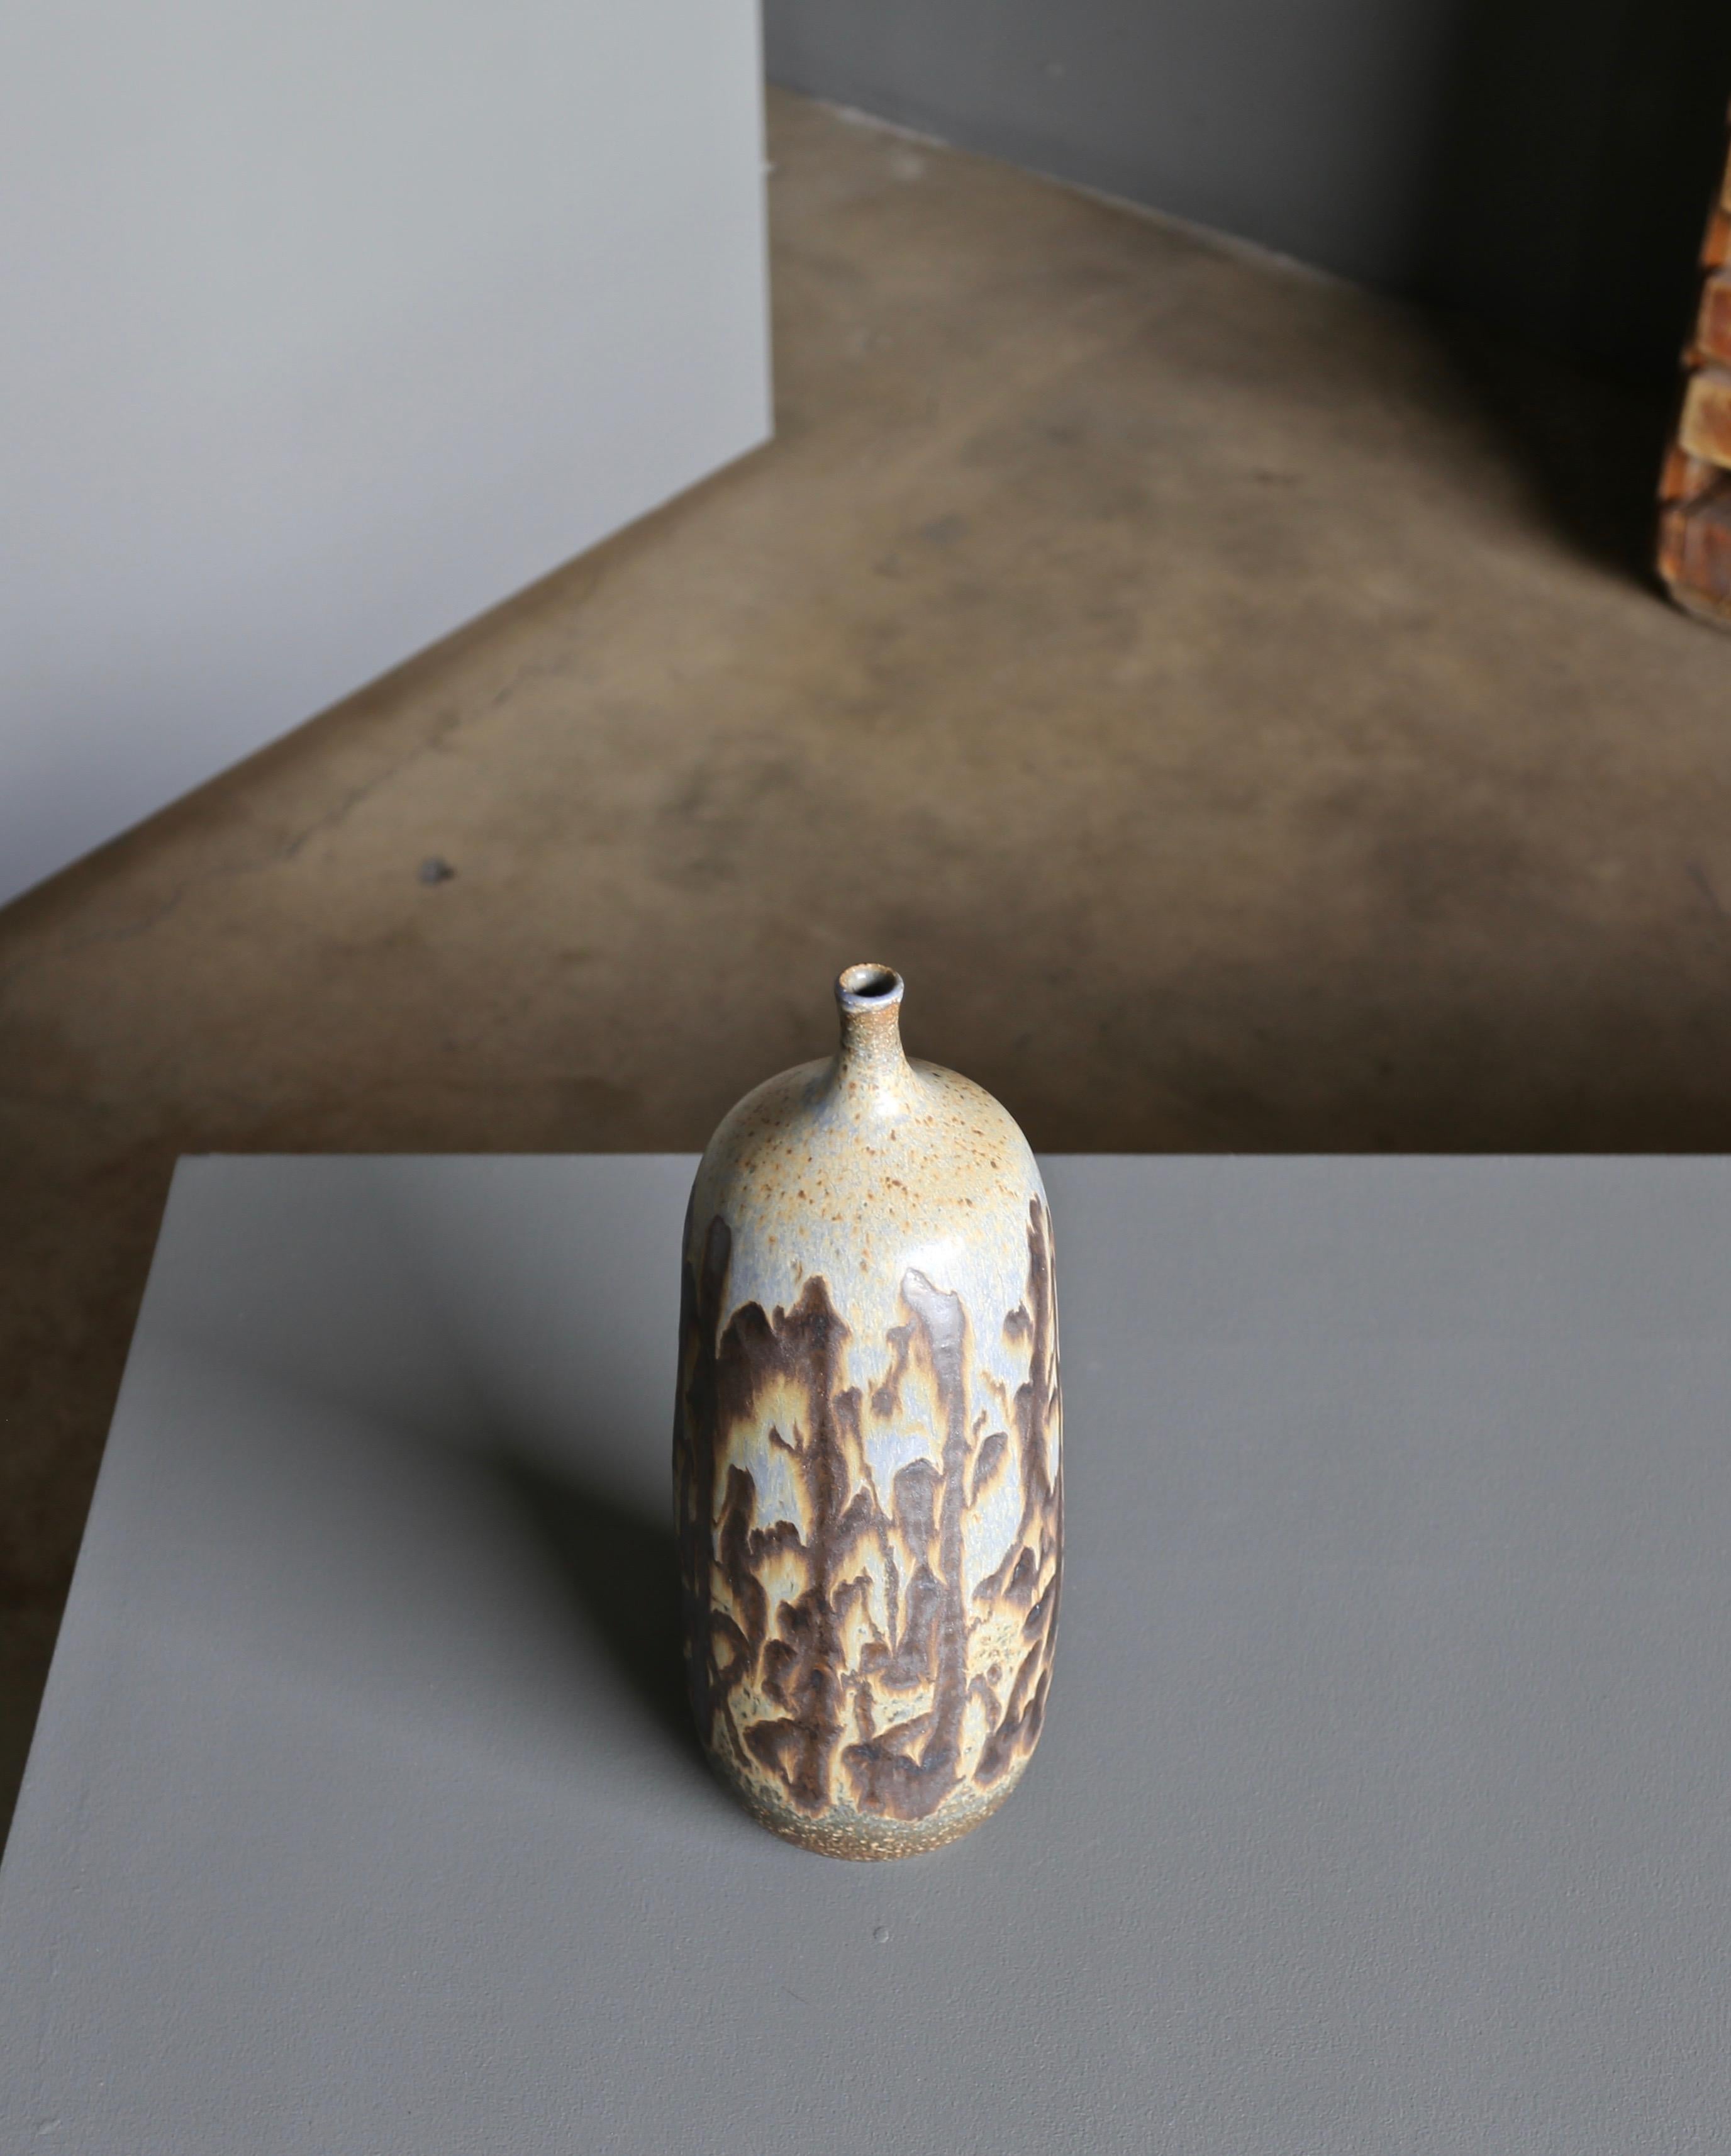 Tim Keenan Ceramic Vase 2